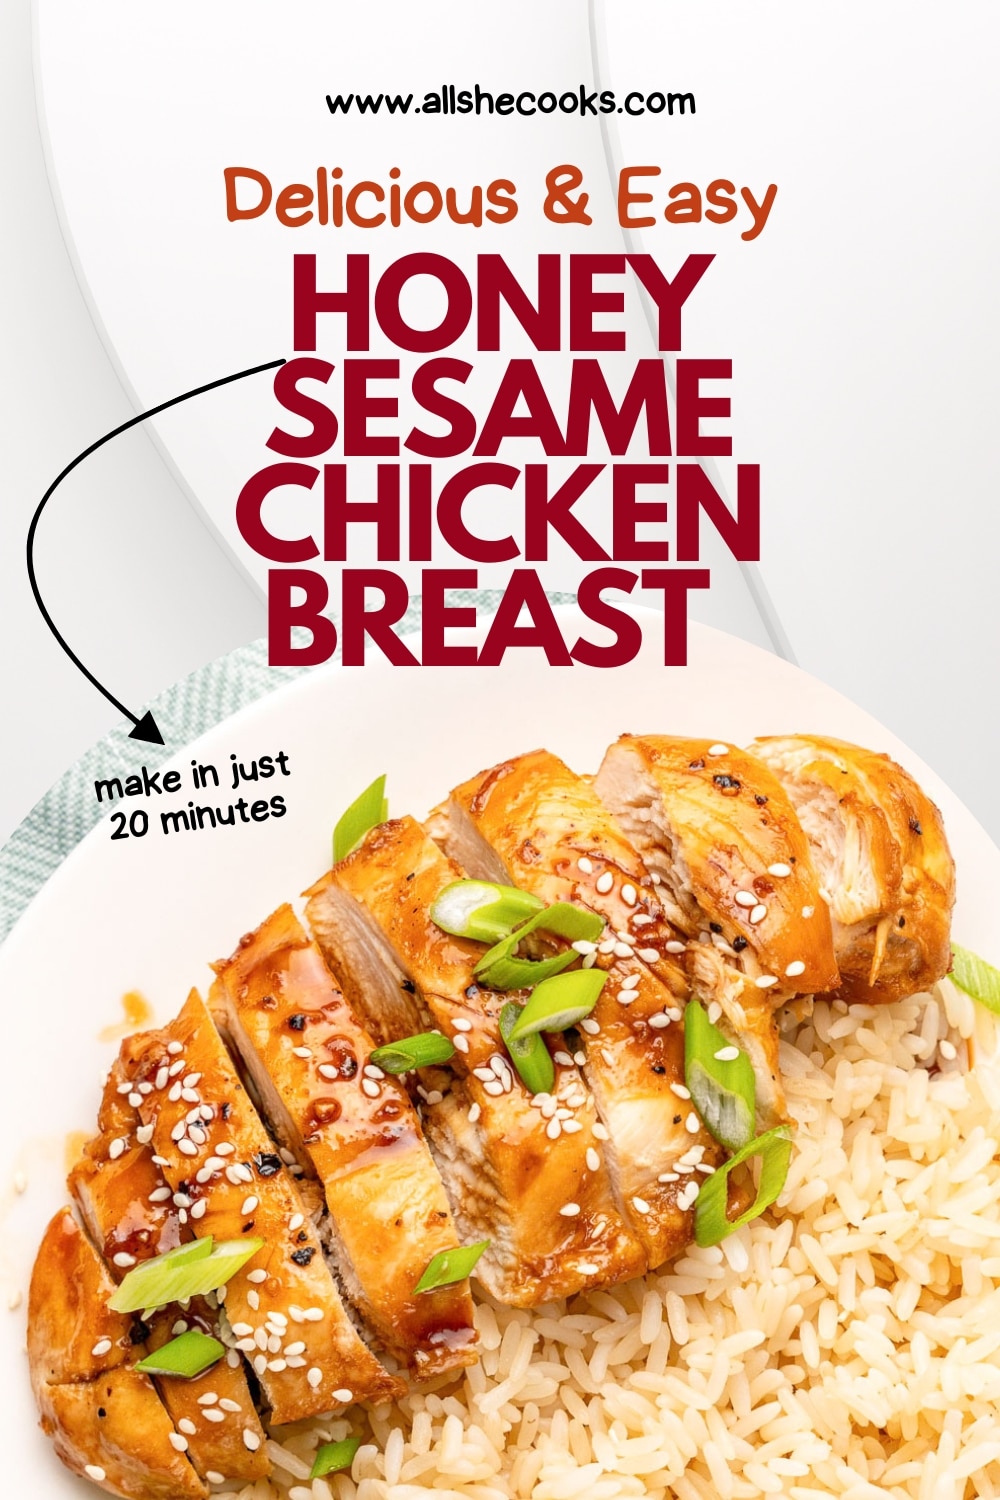 Honey Sesame Chicken Breast - All She Cooks